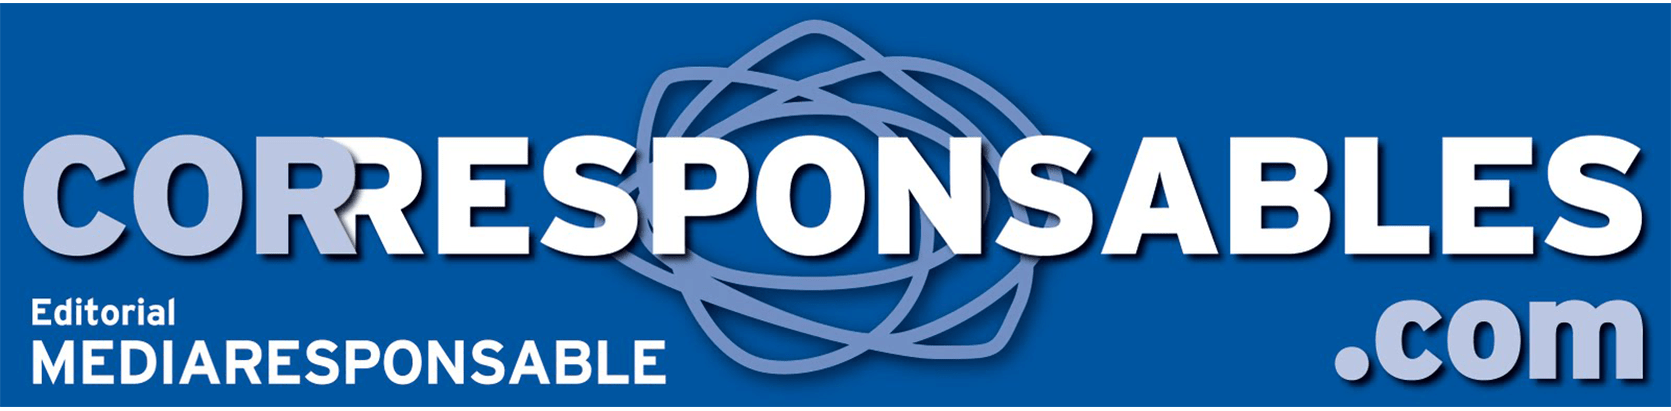 Logo Corresponsables